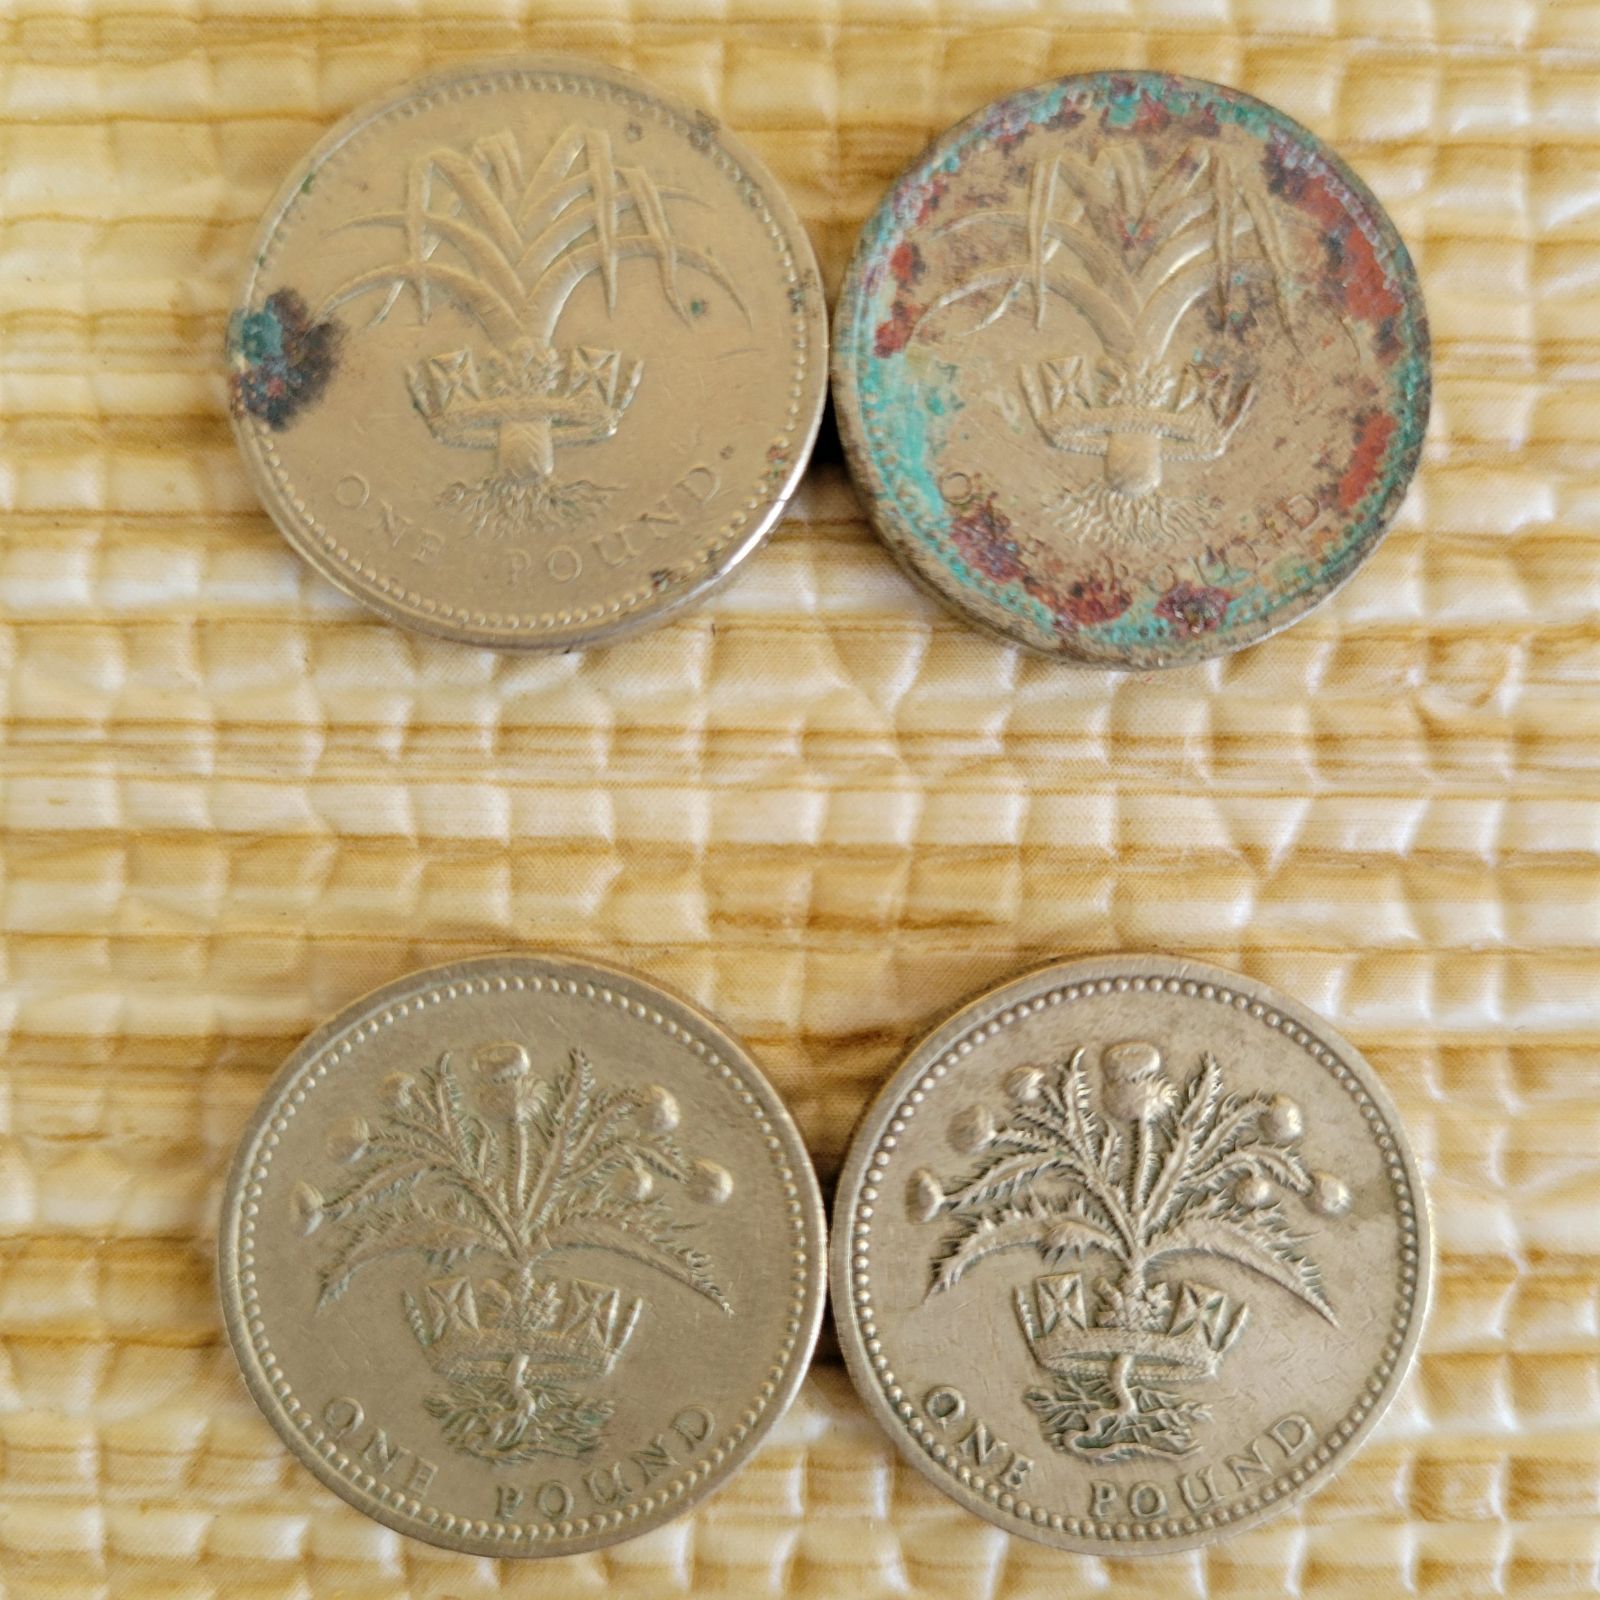 2008 イギリス ピエフォー ポンド銀貨 4枚セット - 旧貨幣/金貨/銀貨 ...